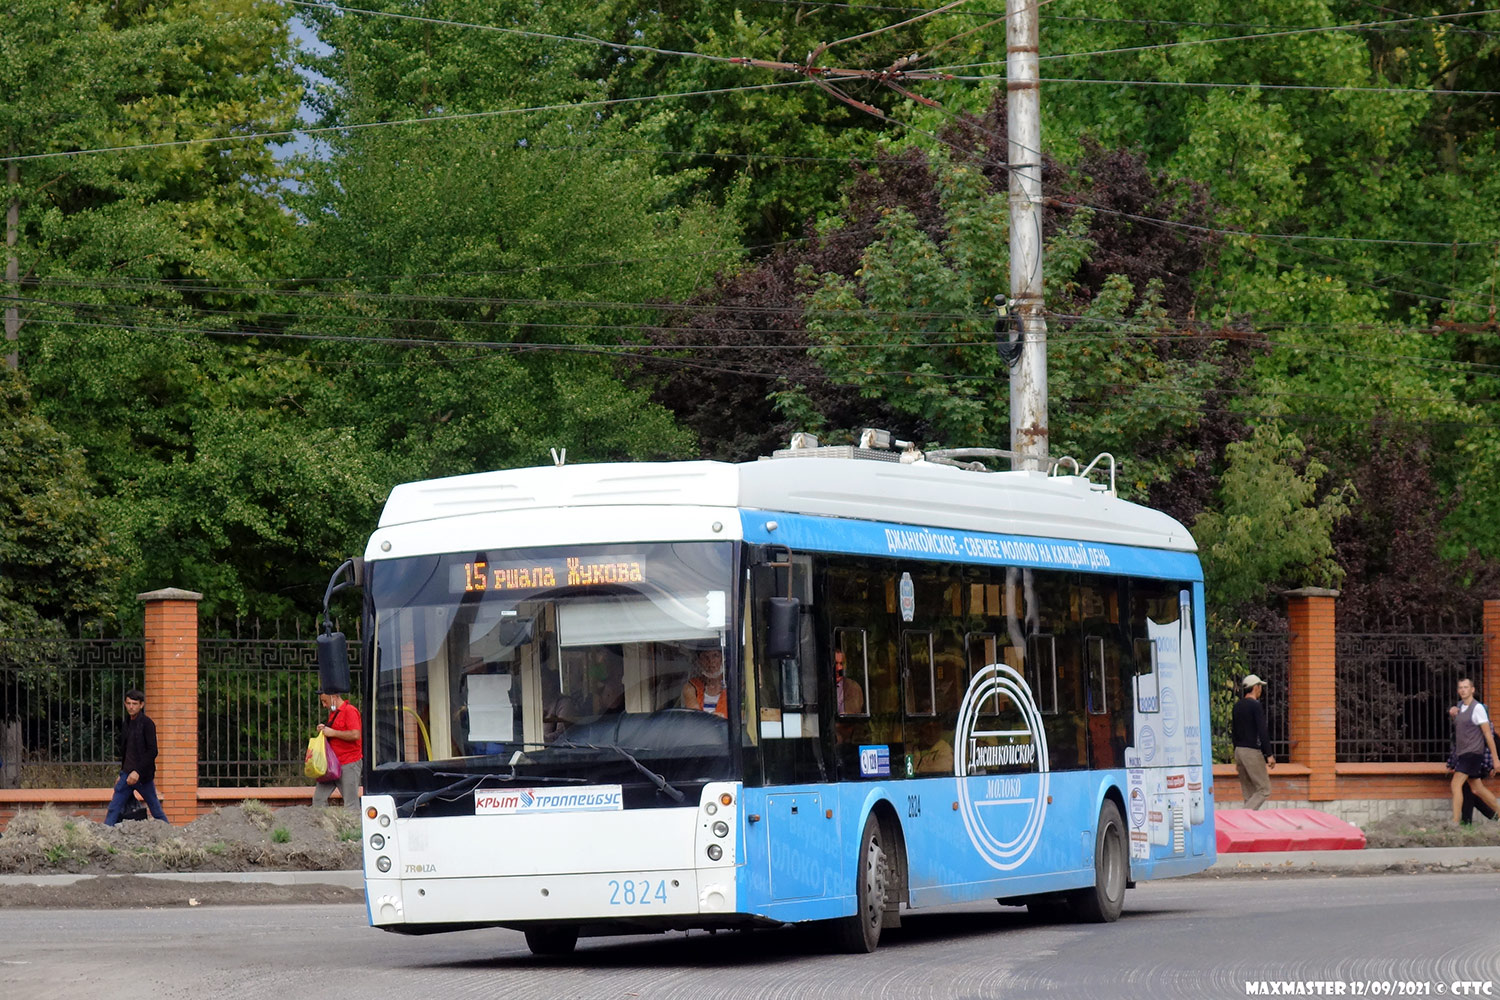 克里米亚无轨电车, Trolza-5265.03 “Megapolis” # 2824; 克里米亚无轨电车 — The movement of trolleybuses without CS (autonomous running).